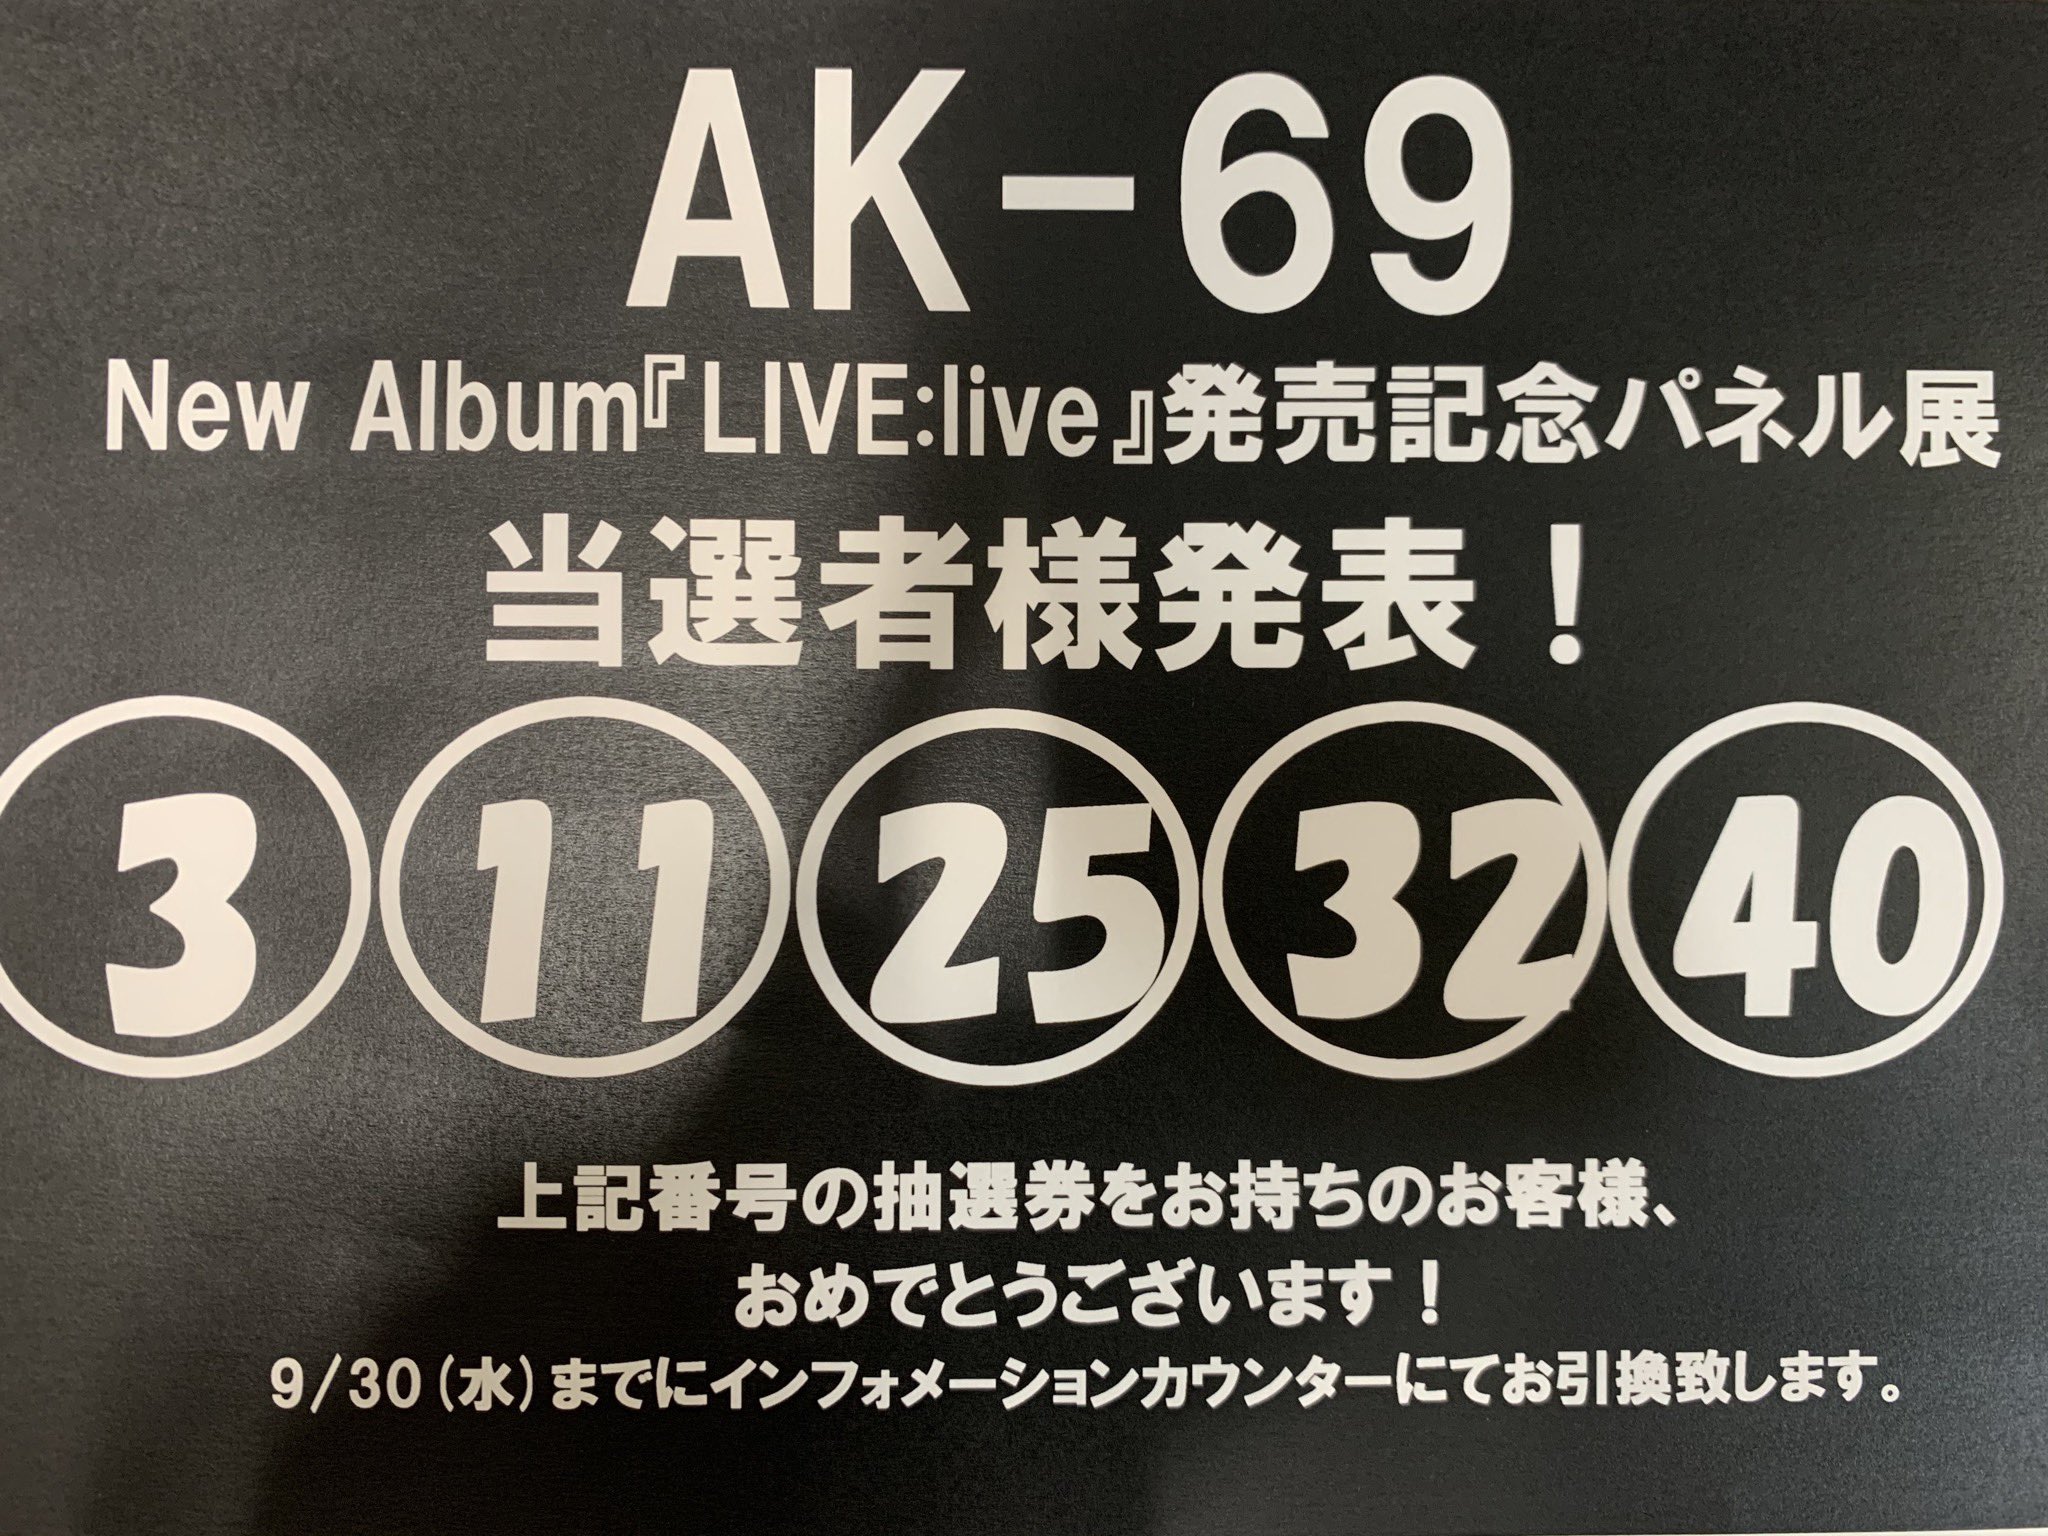 タワーレコード名古屋パルコ店 Ak 69 Ak 69の アルバム Live Live 発売記念パネル抽選の当選番号発表 3 11 25 32 40 おめでとうございます ご当選の方は抽選券を9 30までにインフォメーションカウンターへ当選されました